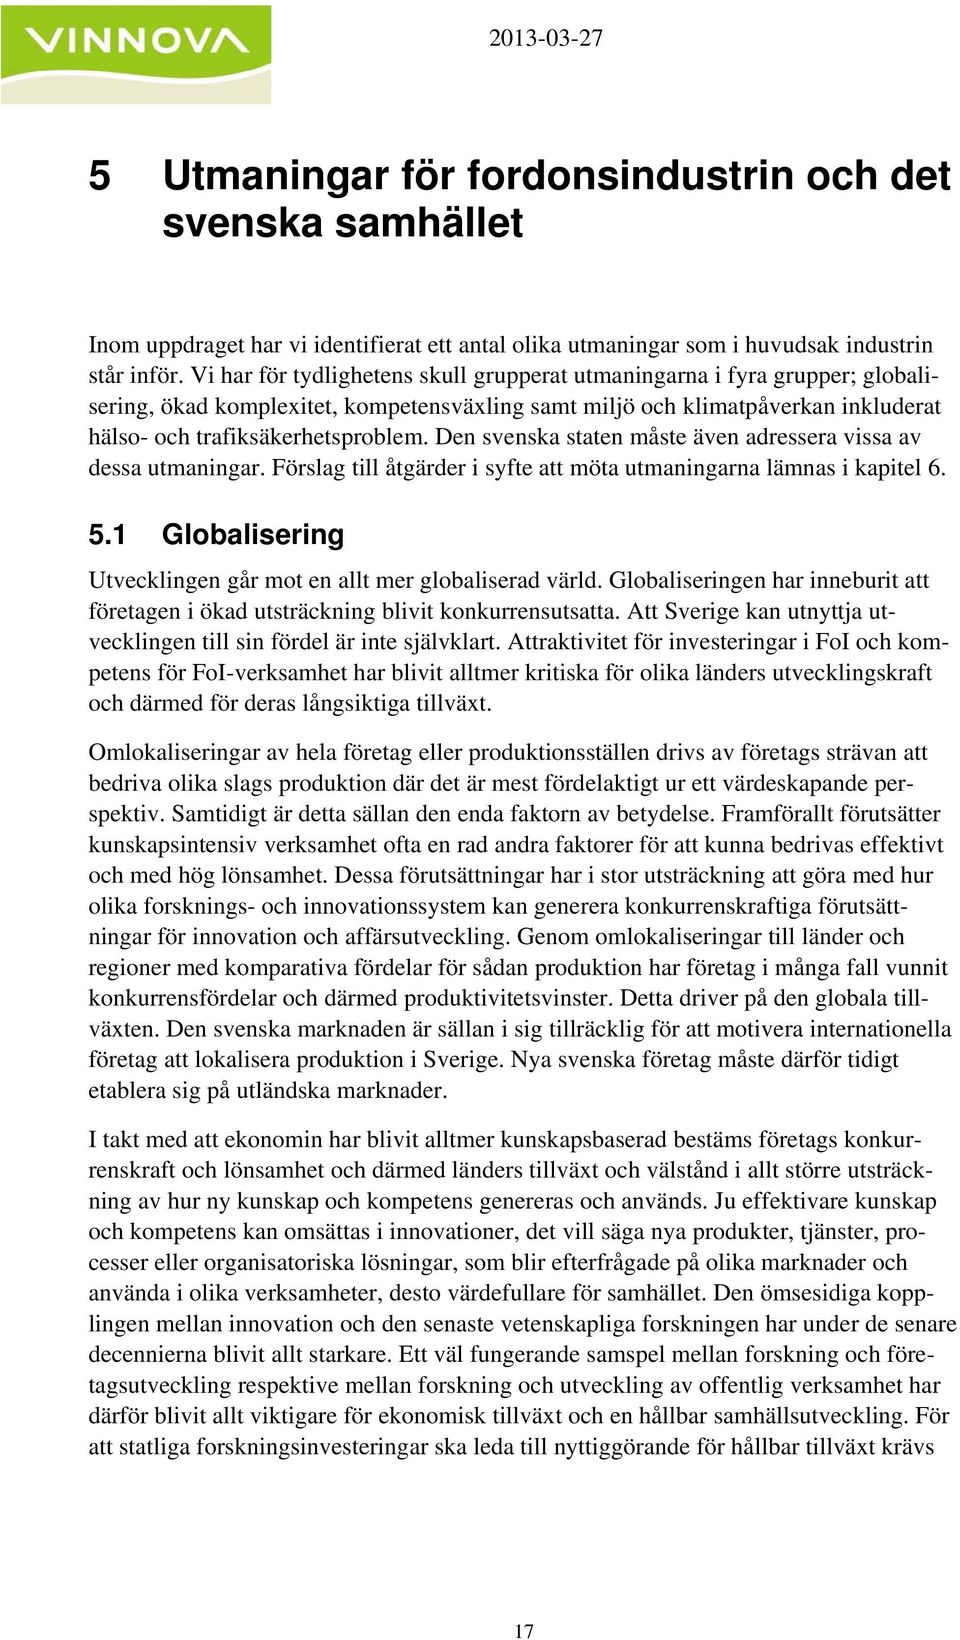 Den svenska staten måste även adressera vissa av dessa utmaningar. Förslag till åtgärder i syfte att möta utmaningarna lämnas i kapitel 6. 5.